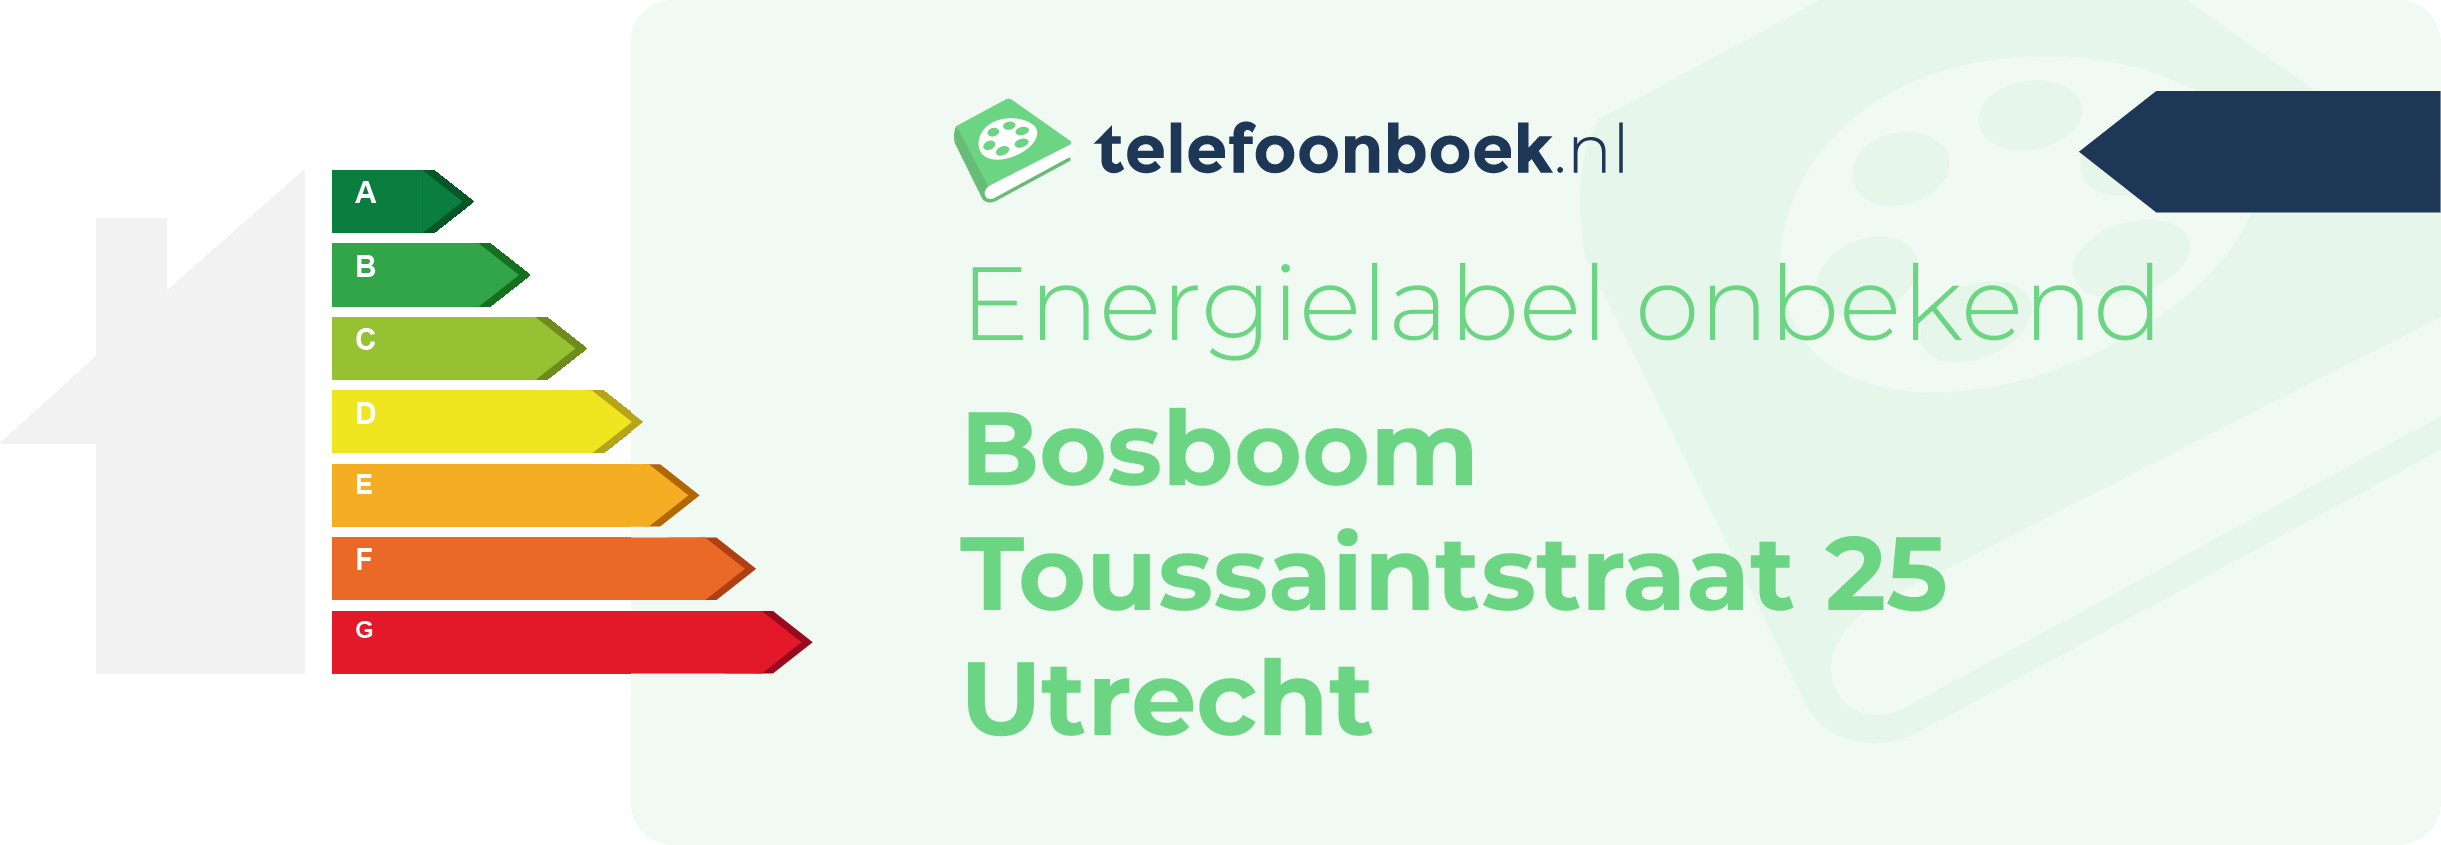 Energielabel Bosboom Toussaintstraat 25 Utrecht